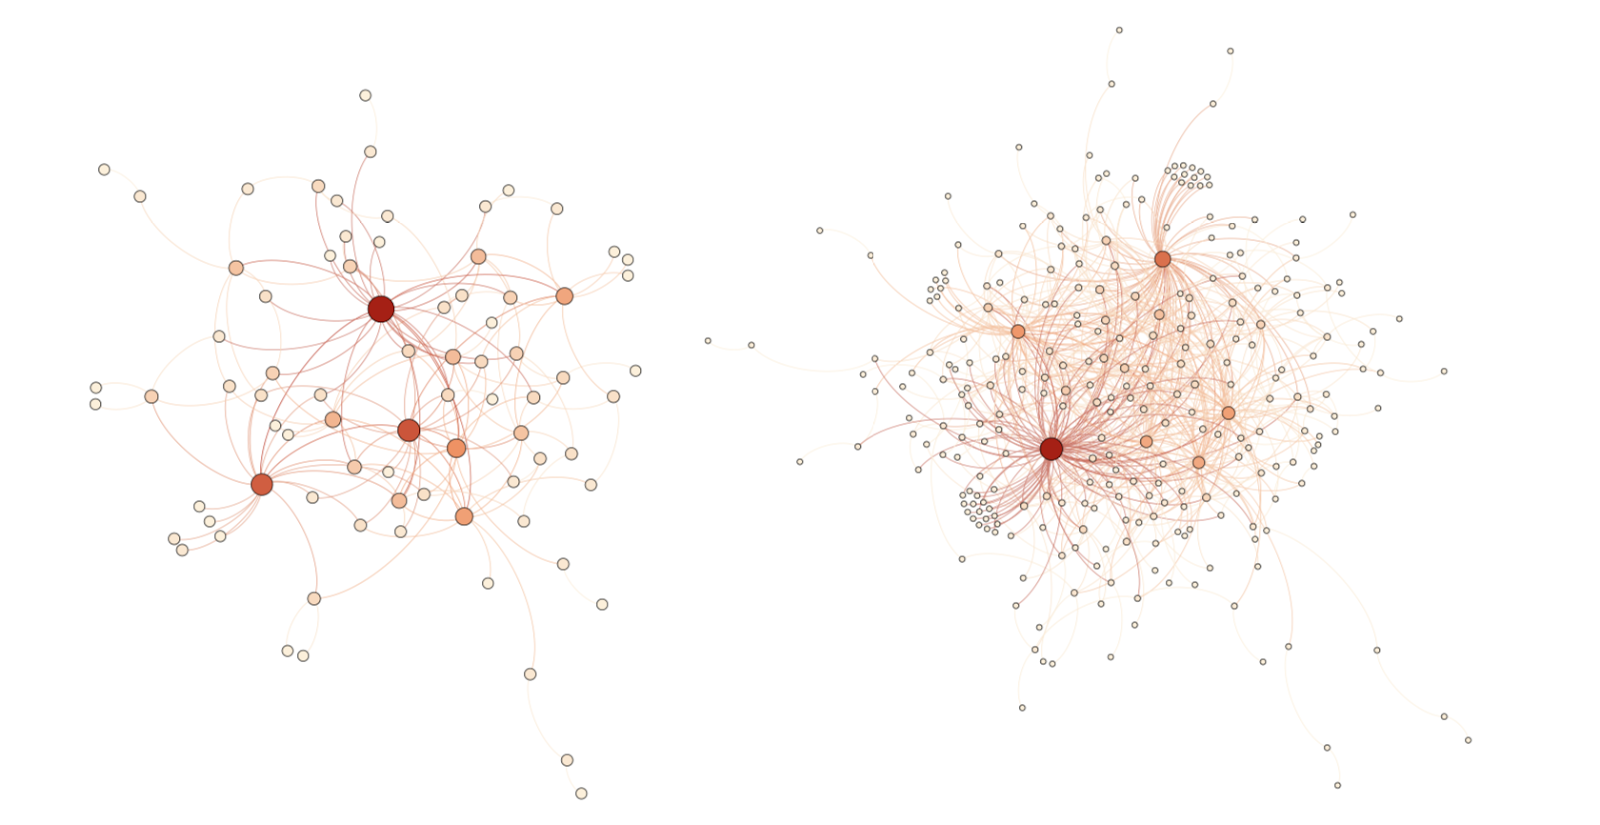 Phân phối dữ liệu thực tế trên Lightning Network vào ngày 16 và 34. Màu cam và màu đỏ đại diện cho các node trung tâm.